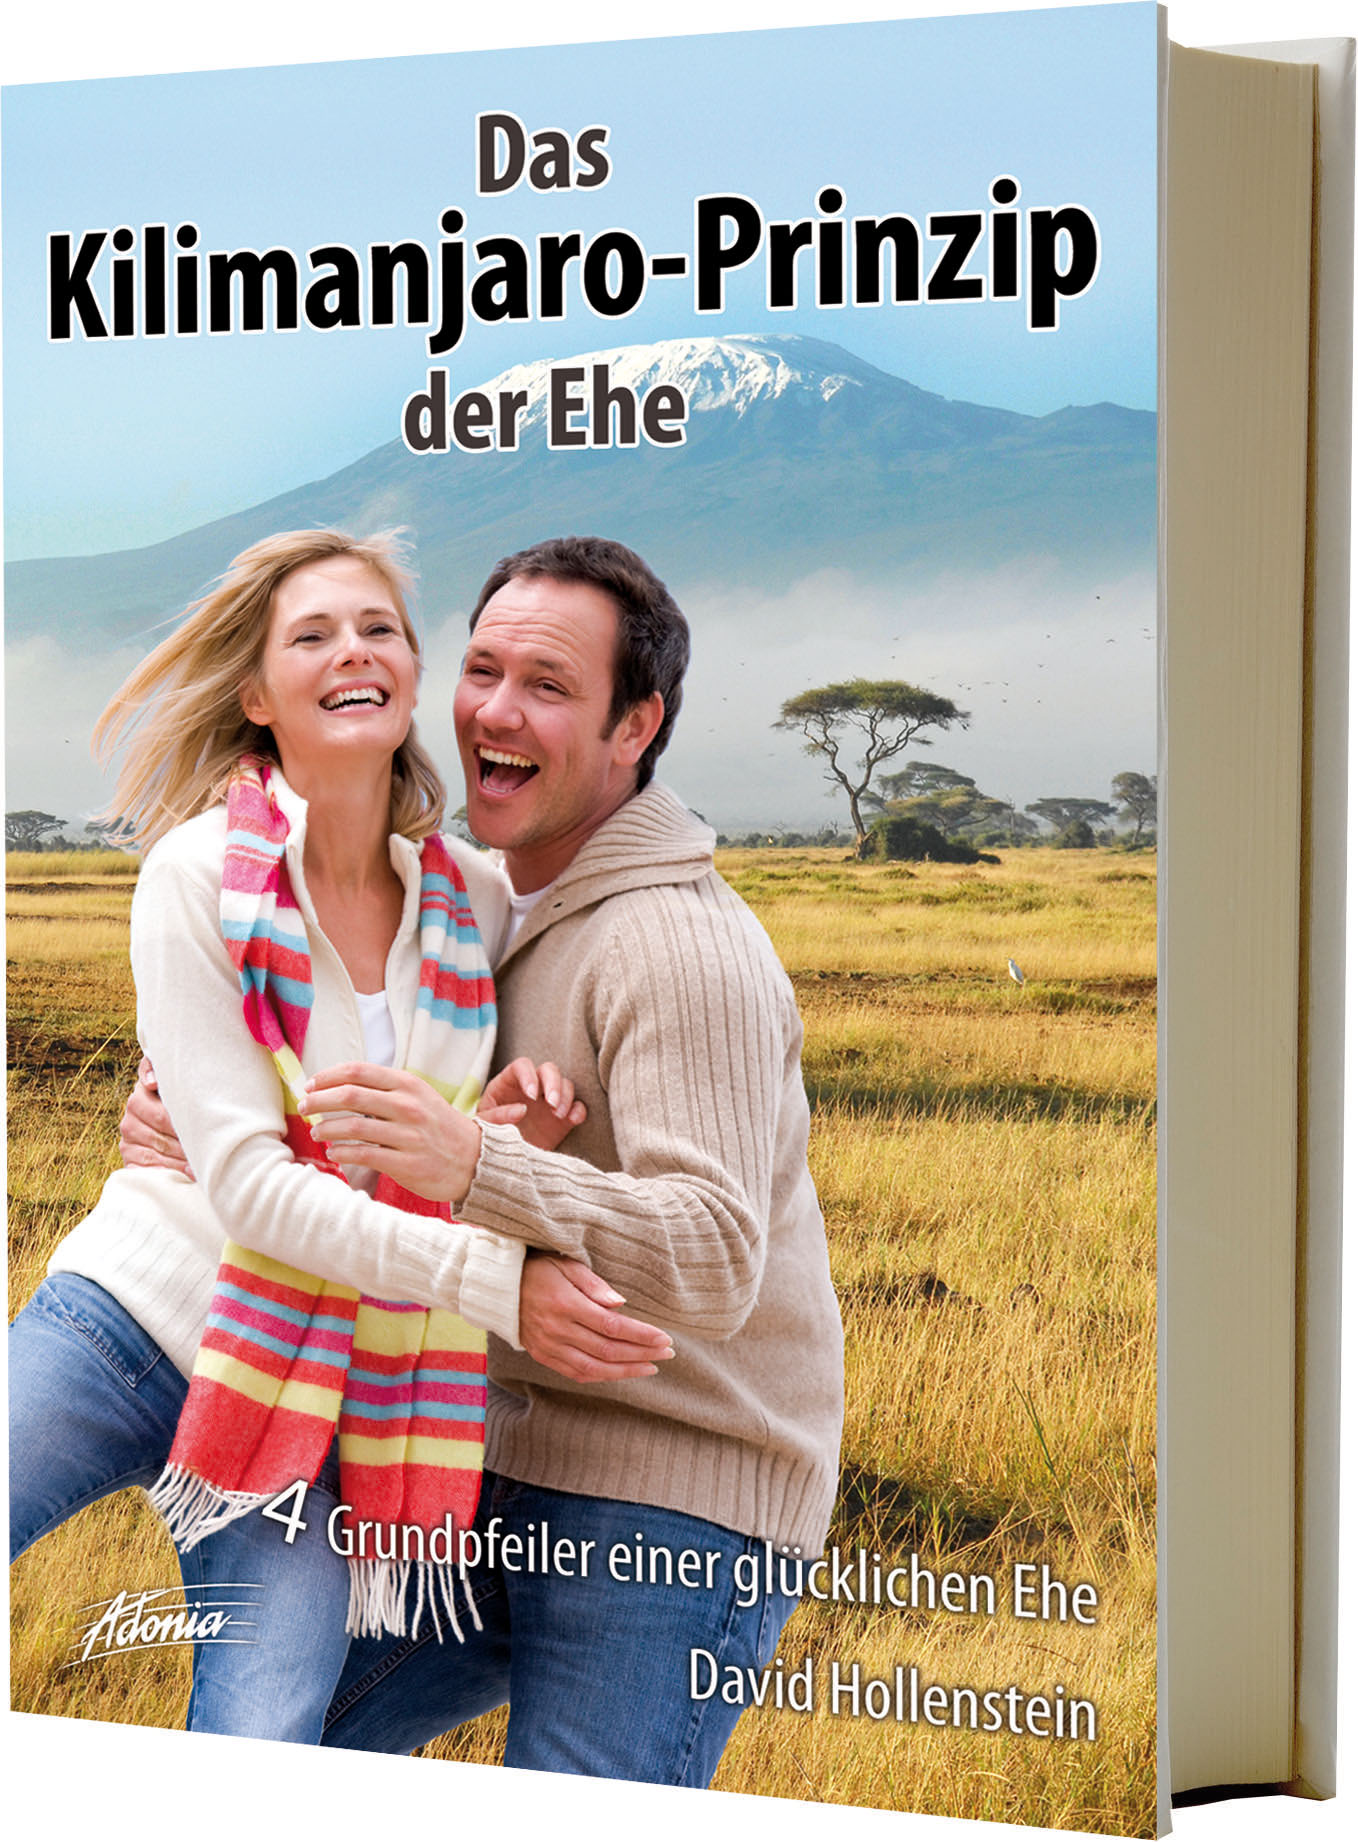 Das Kilimanjaro-Prinzip der Ehe